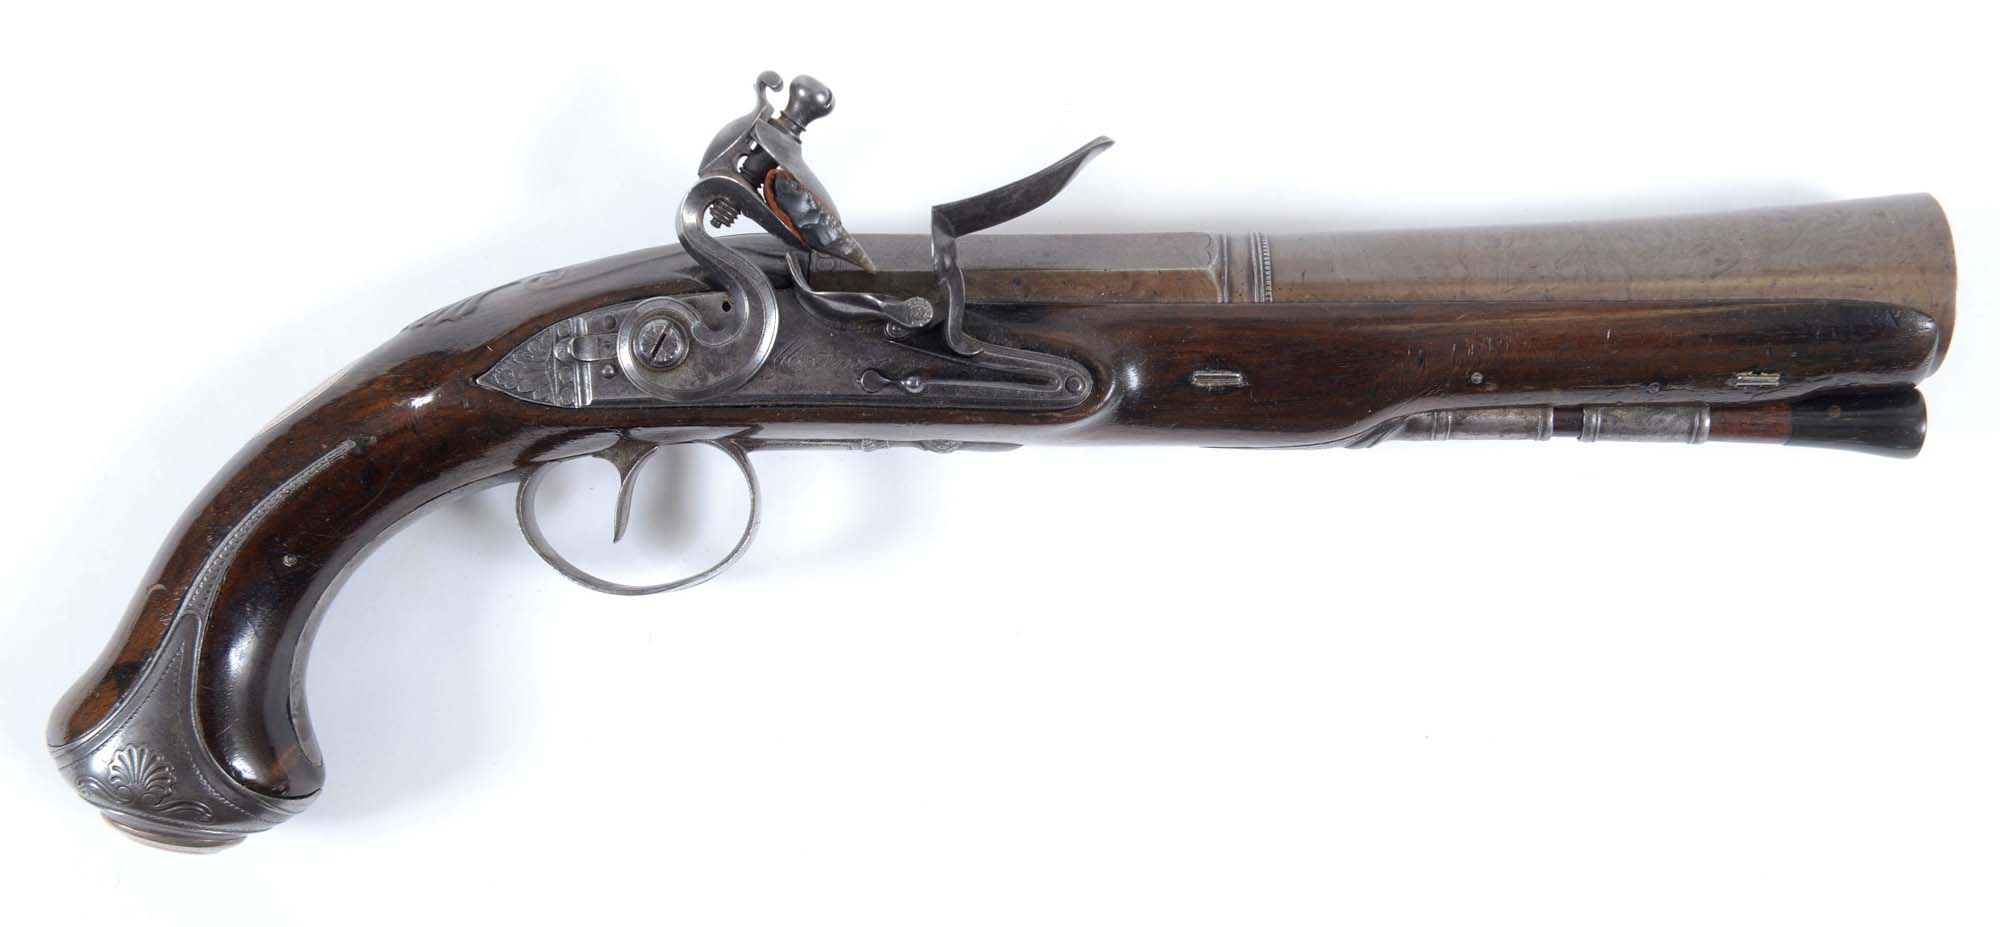 A BLUNDERBUSS PISTOL BY H MORTIMER. A Flintlock steel barrelled Blunderbuss pistol, made during